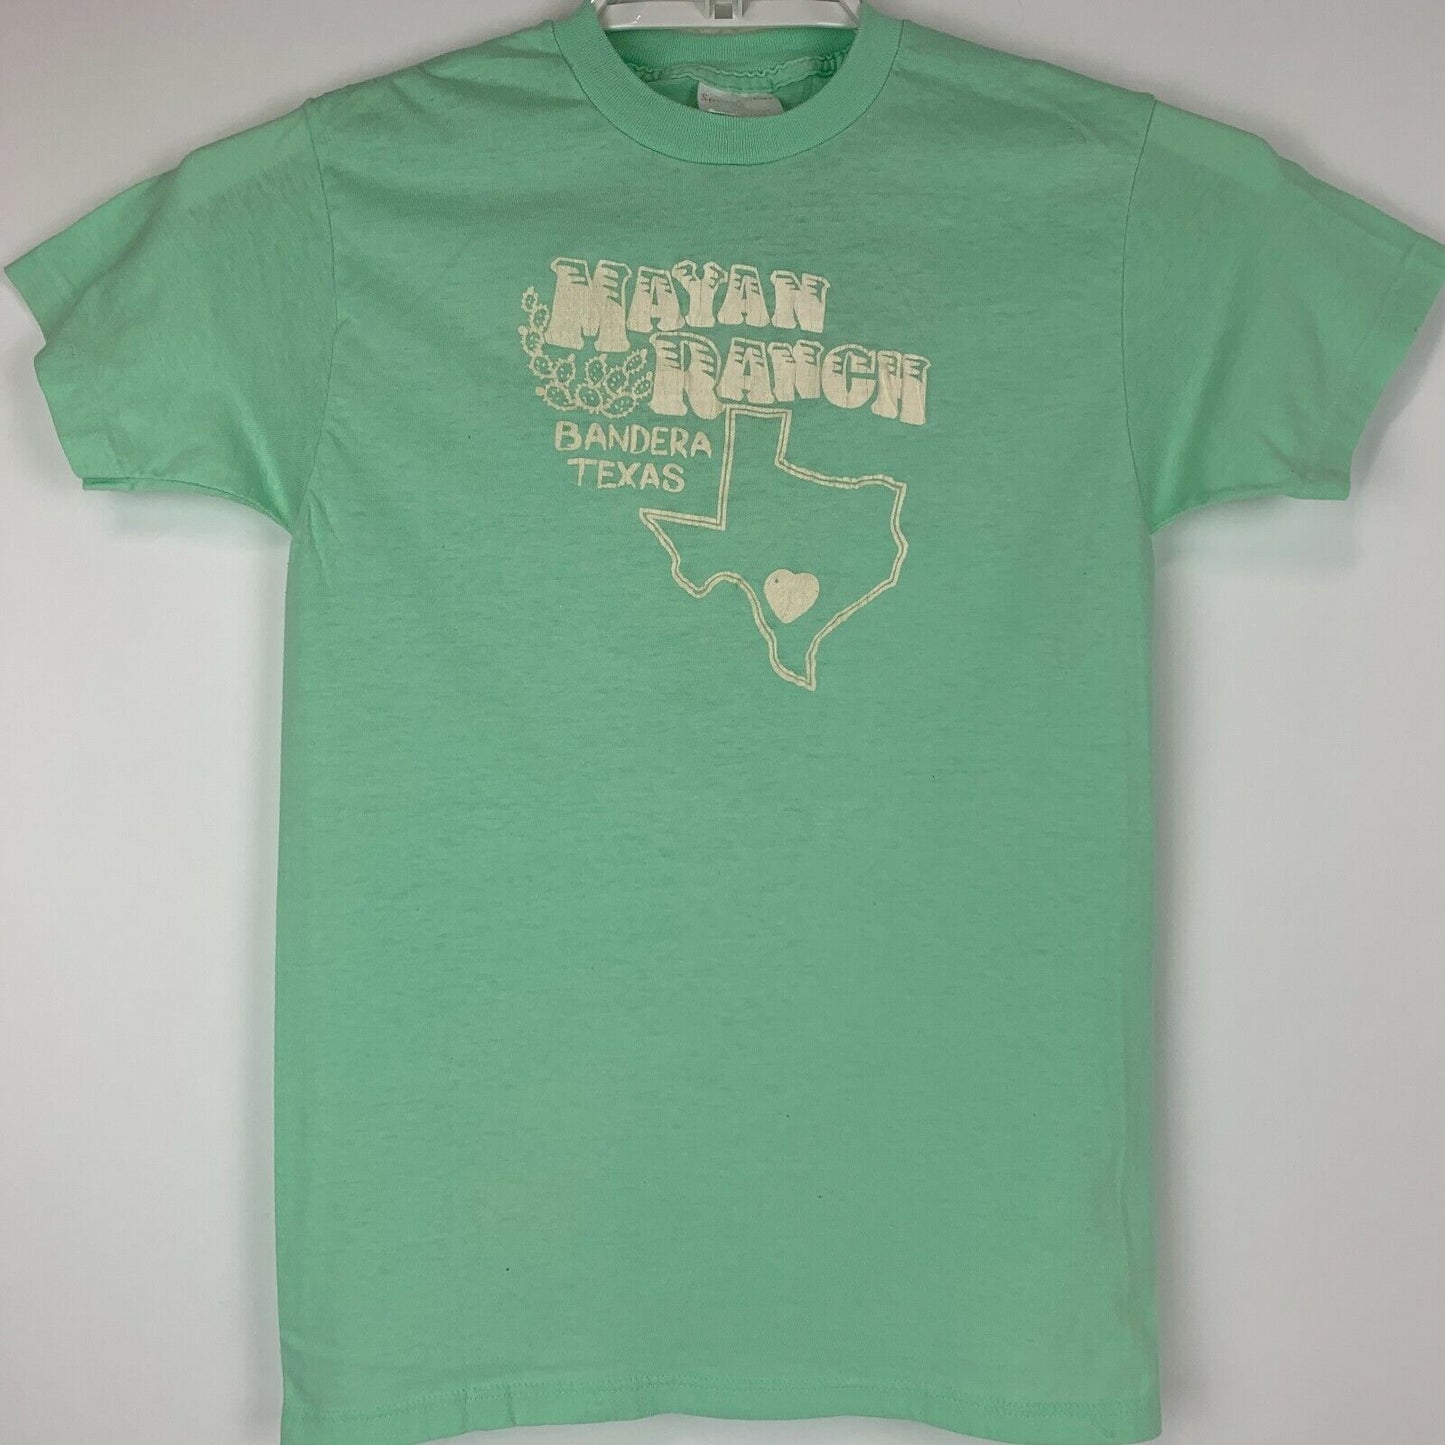 Mayan Dude Ranch Vintage 80s T Shirt Bandera Texas Cowboy Western Made In USA XS